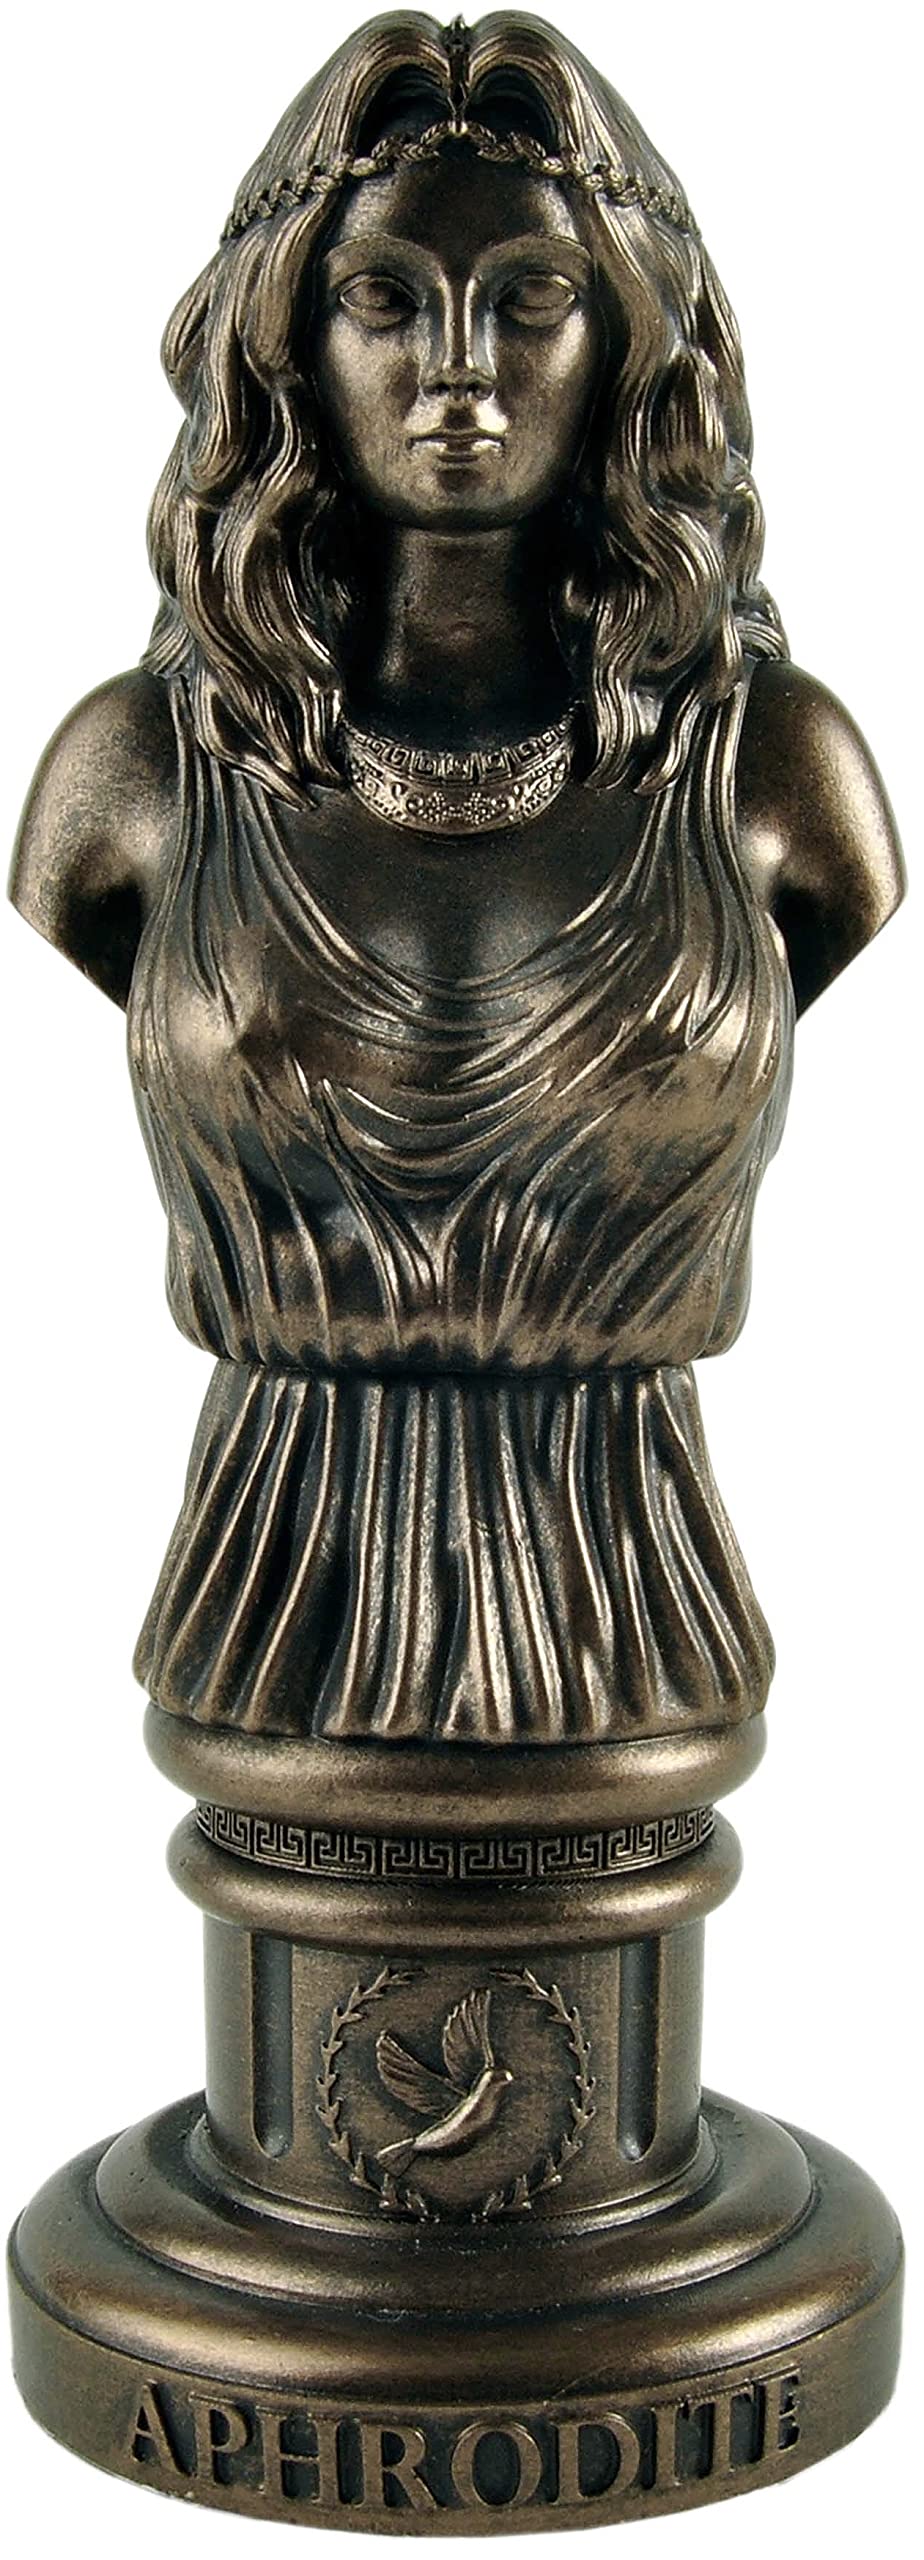 Aphrodite Bust Sculpture